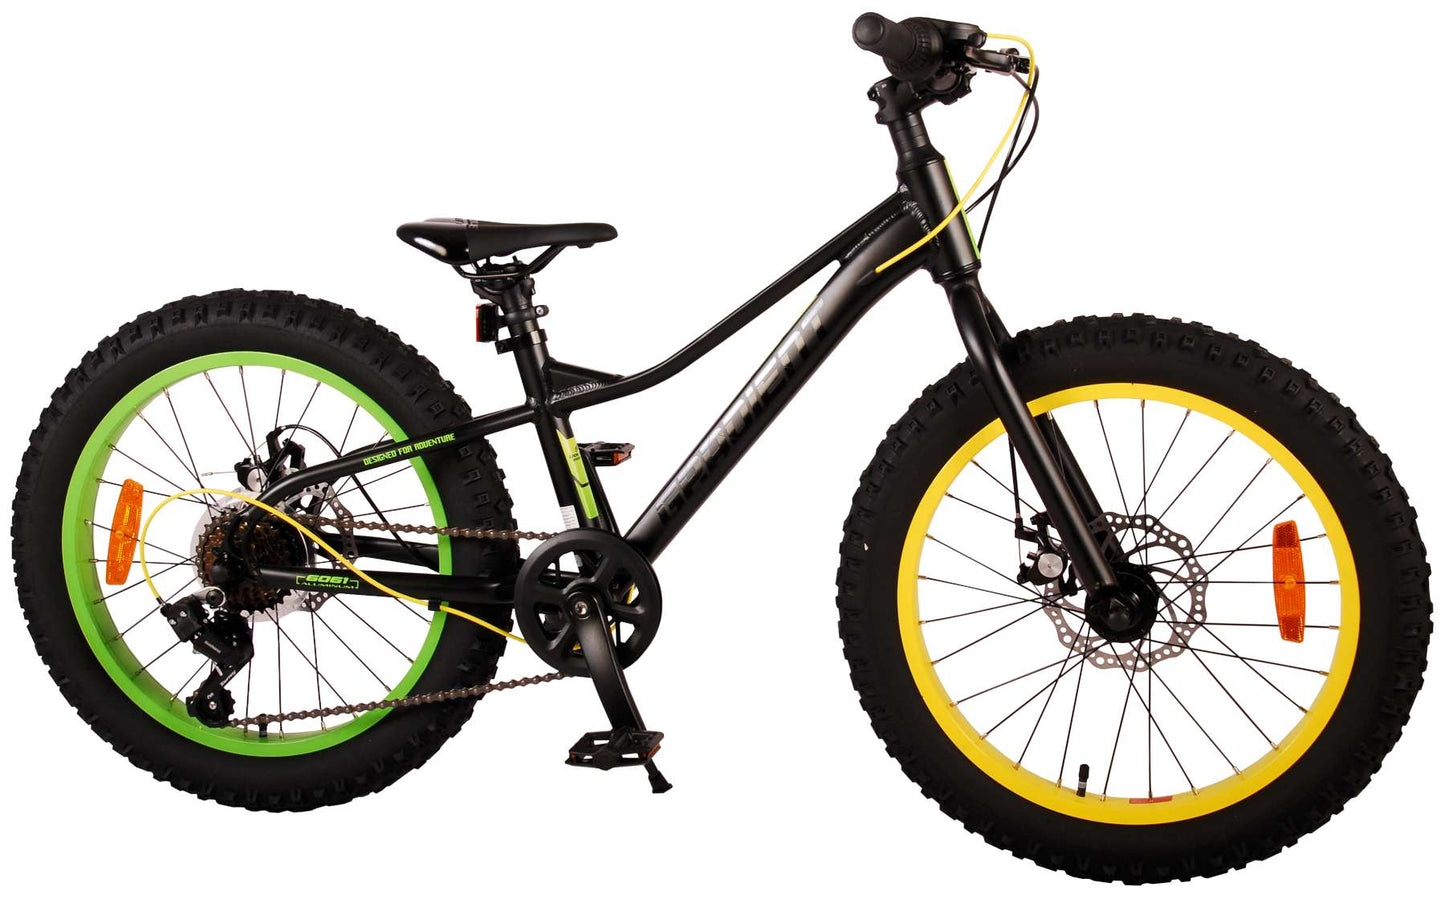 Bicycle per bambini a gradiente Vlatare - Boys - 20 pollici - Verde giallo nero - 6 velocità - Collezione Prime